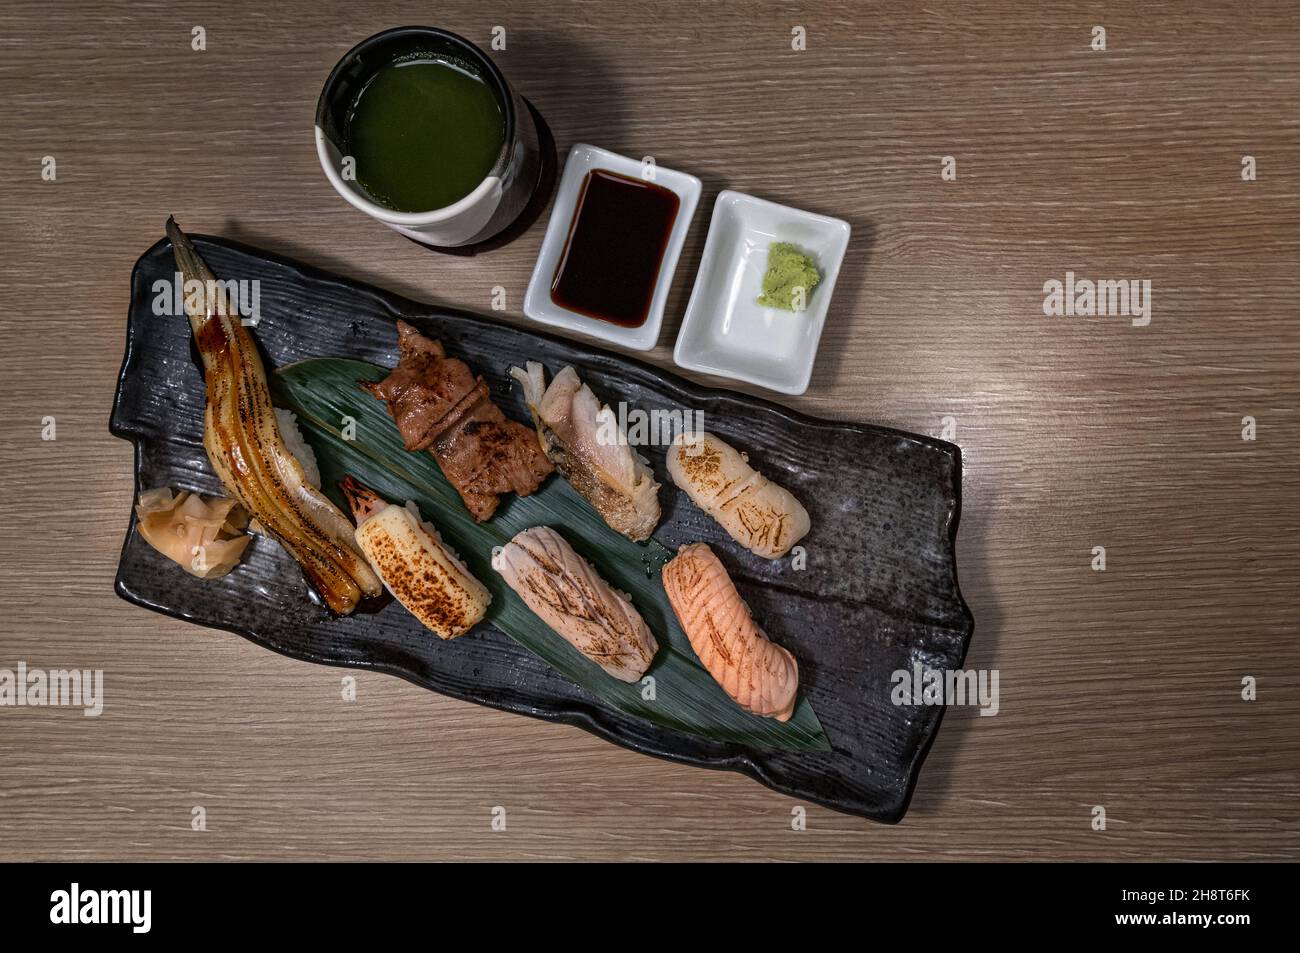 Draufsicht Bild von gegrilltem Sushi auf schwarzem Teller mit grünem Tee Tasse, gegrillte Vielfalt an gesunden Sushi, Lachs, Thunfisch, Garnelen, Rindfleisch und Engawa. Stockfoto